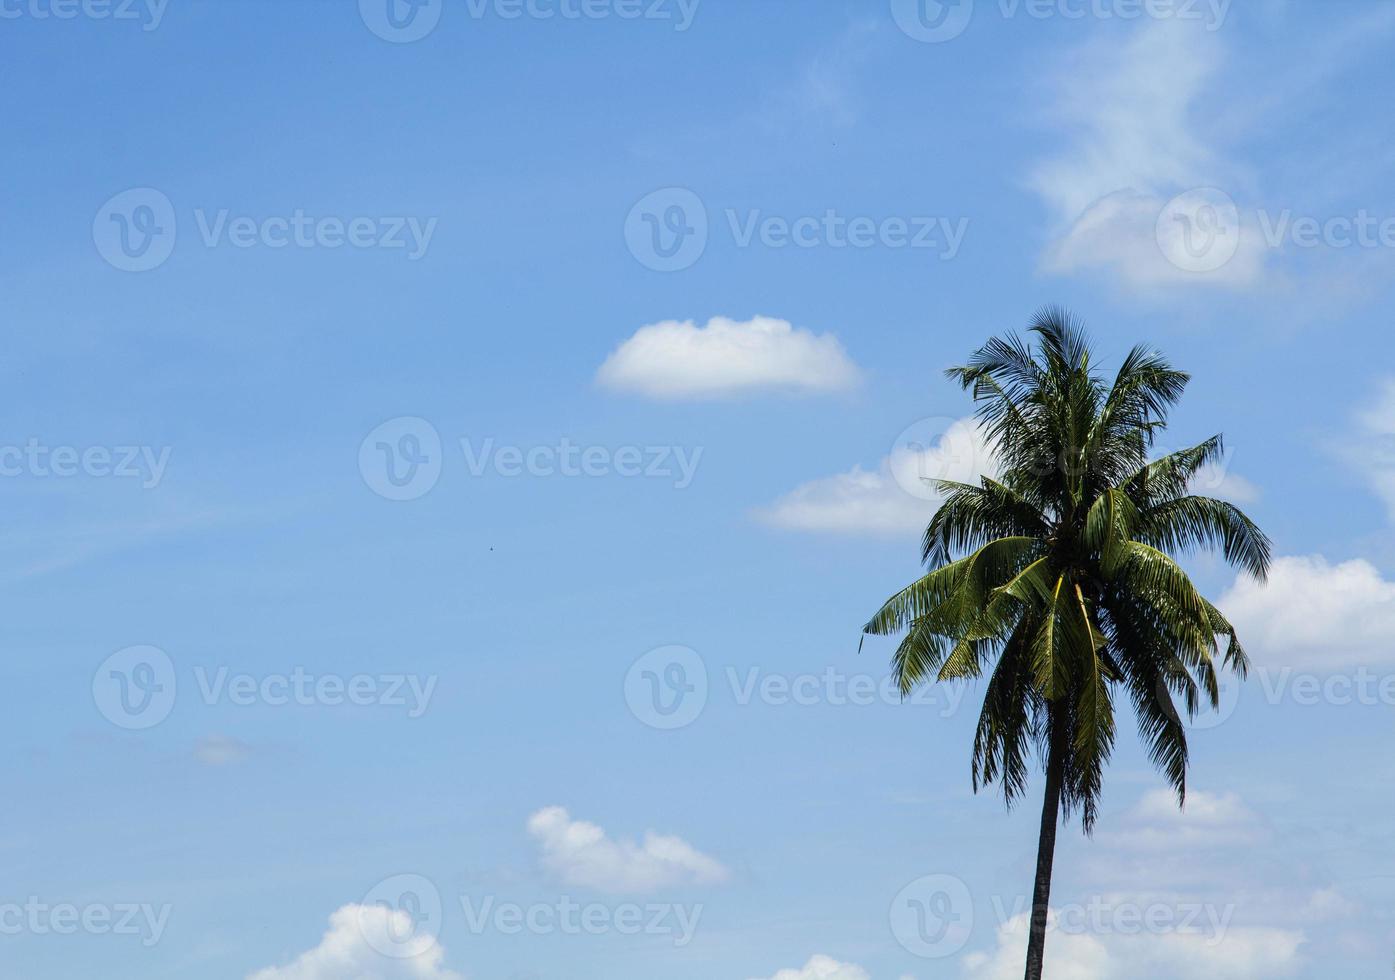 atmosfera céu-cumulus que flutua no céu naturalmente bonito em um dia ensolarado com coqueiros como pano de fundo contra um belo fundo de céu azul. foto